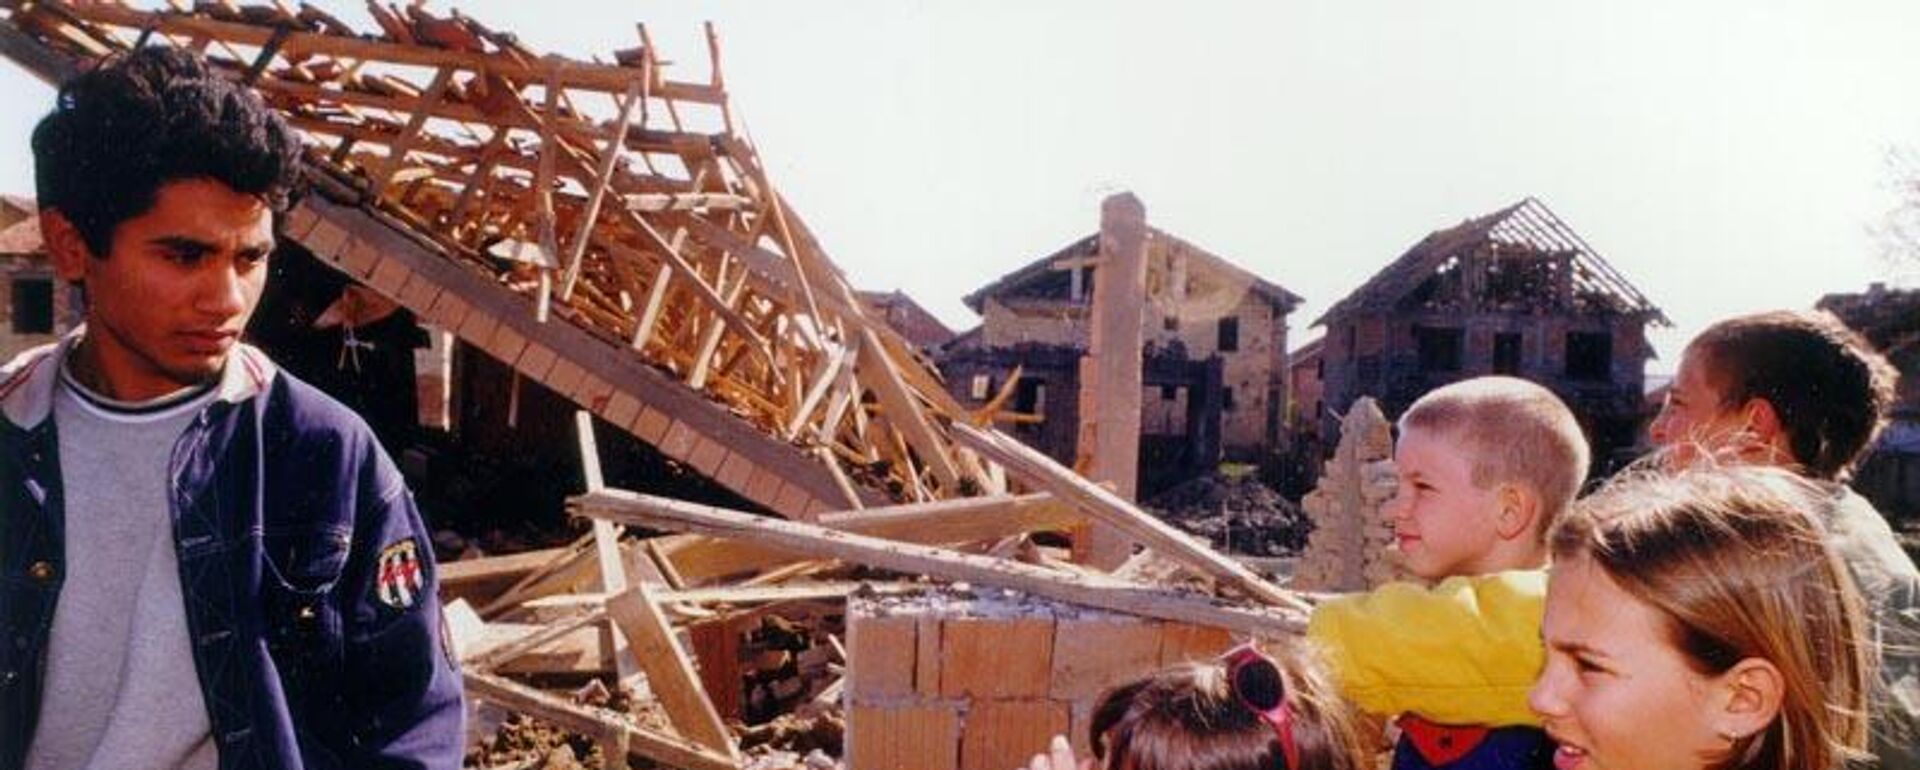 Куће уништене НАТО бомбардовањем у насељу Видовлан, Југославија 1999. - Sputnik Србија, 1920, 24.03.2023